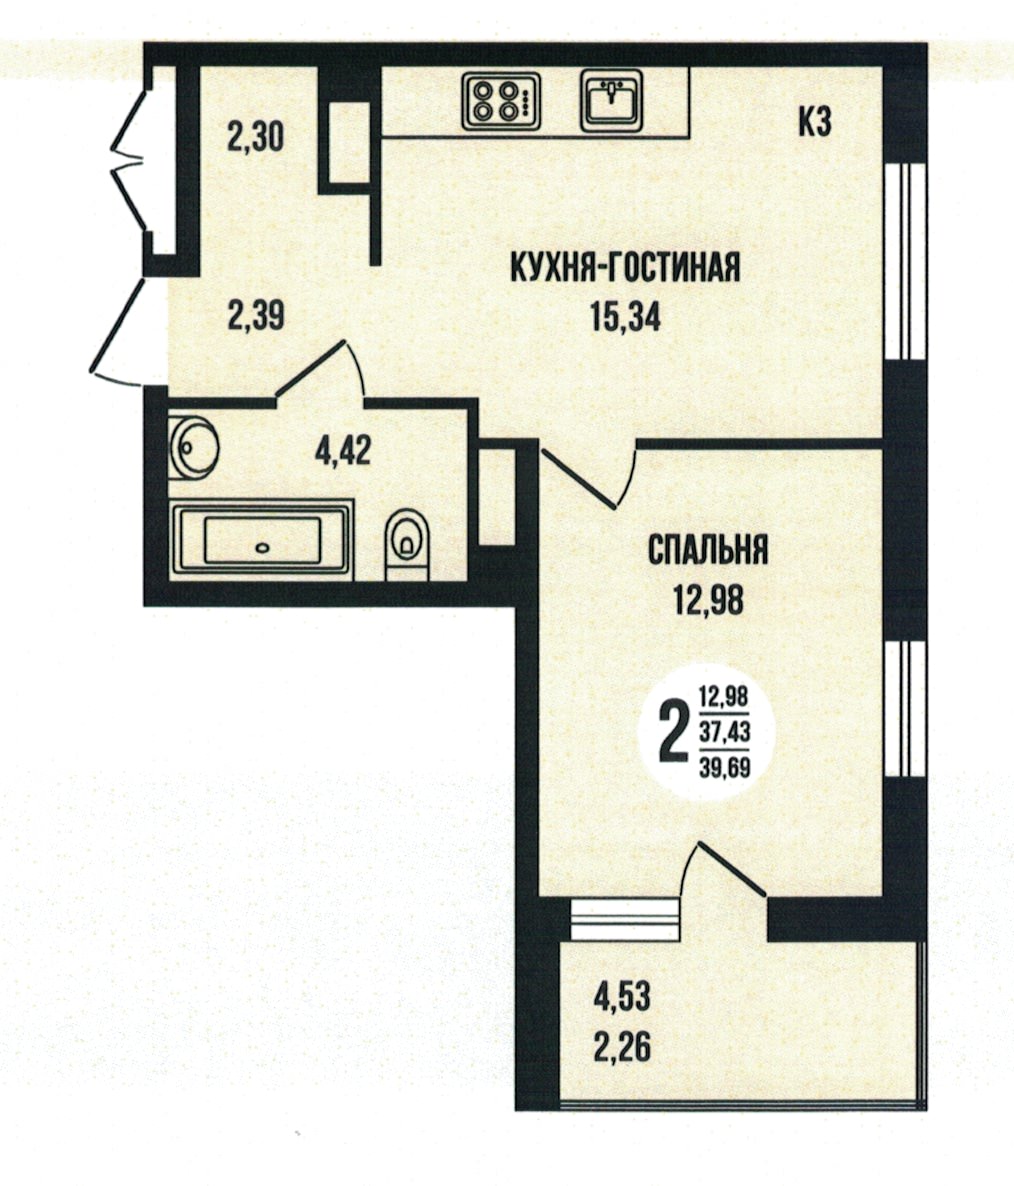 Евро 2-комнатная квартира 39.69 м² с лоджией из спальни